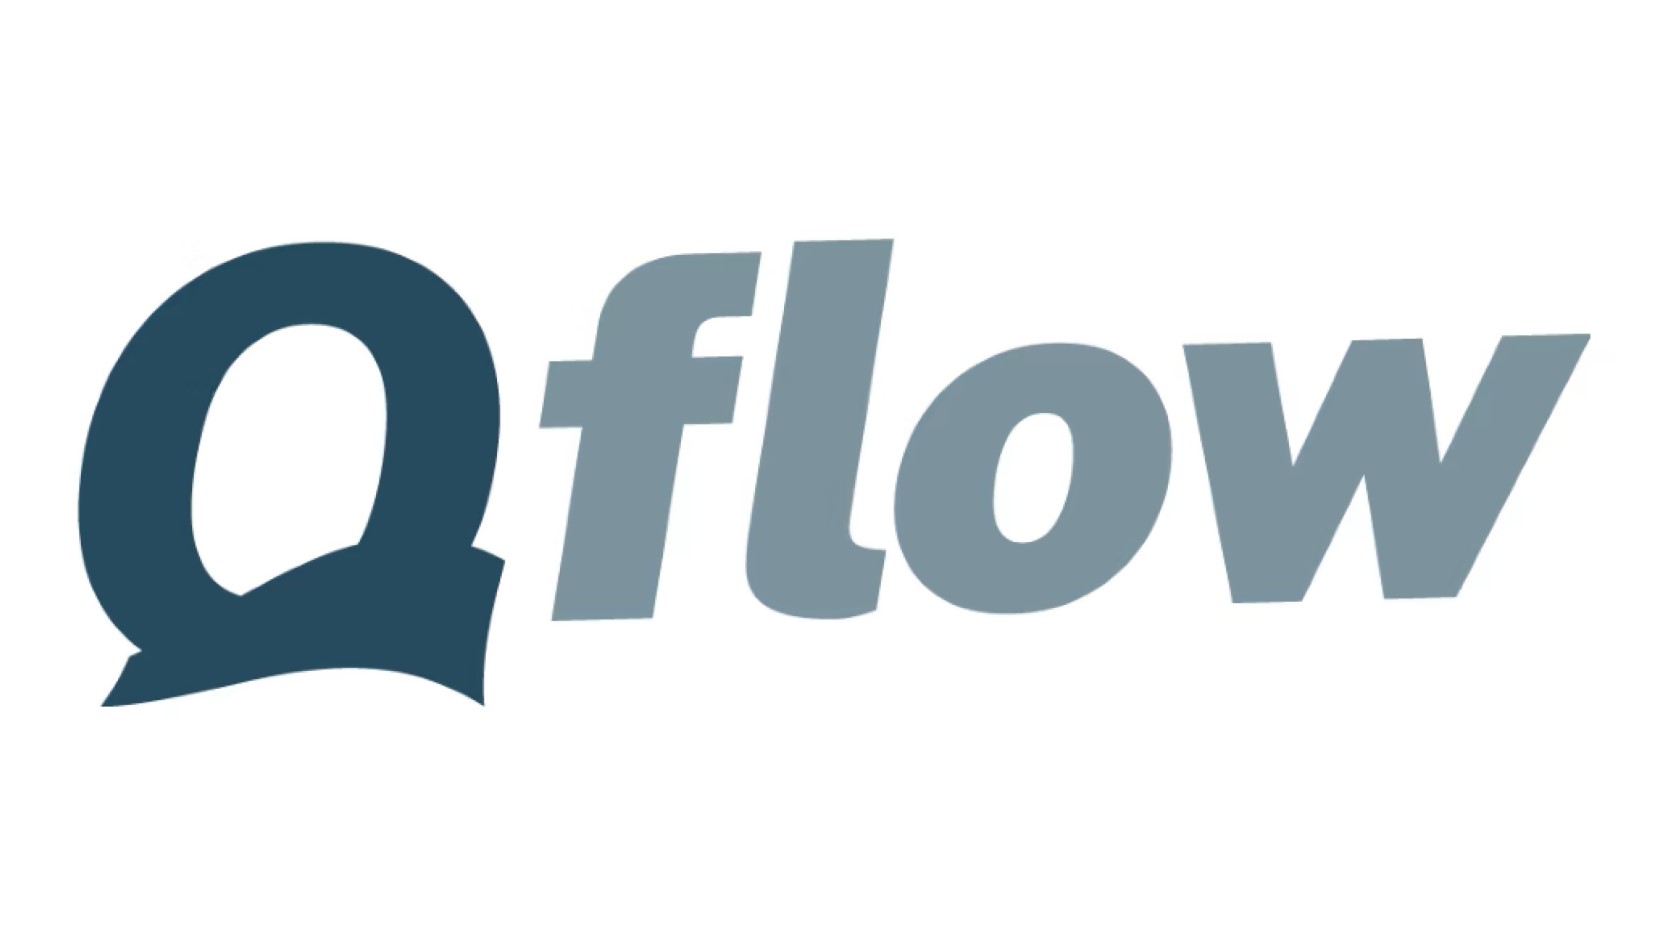 Inhouse Tech med ledande projektledare och konstruktörer är nu en viktig del av Qflow Group